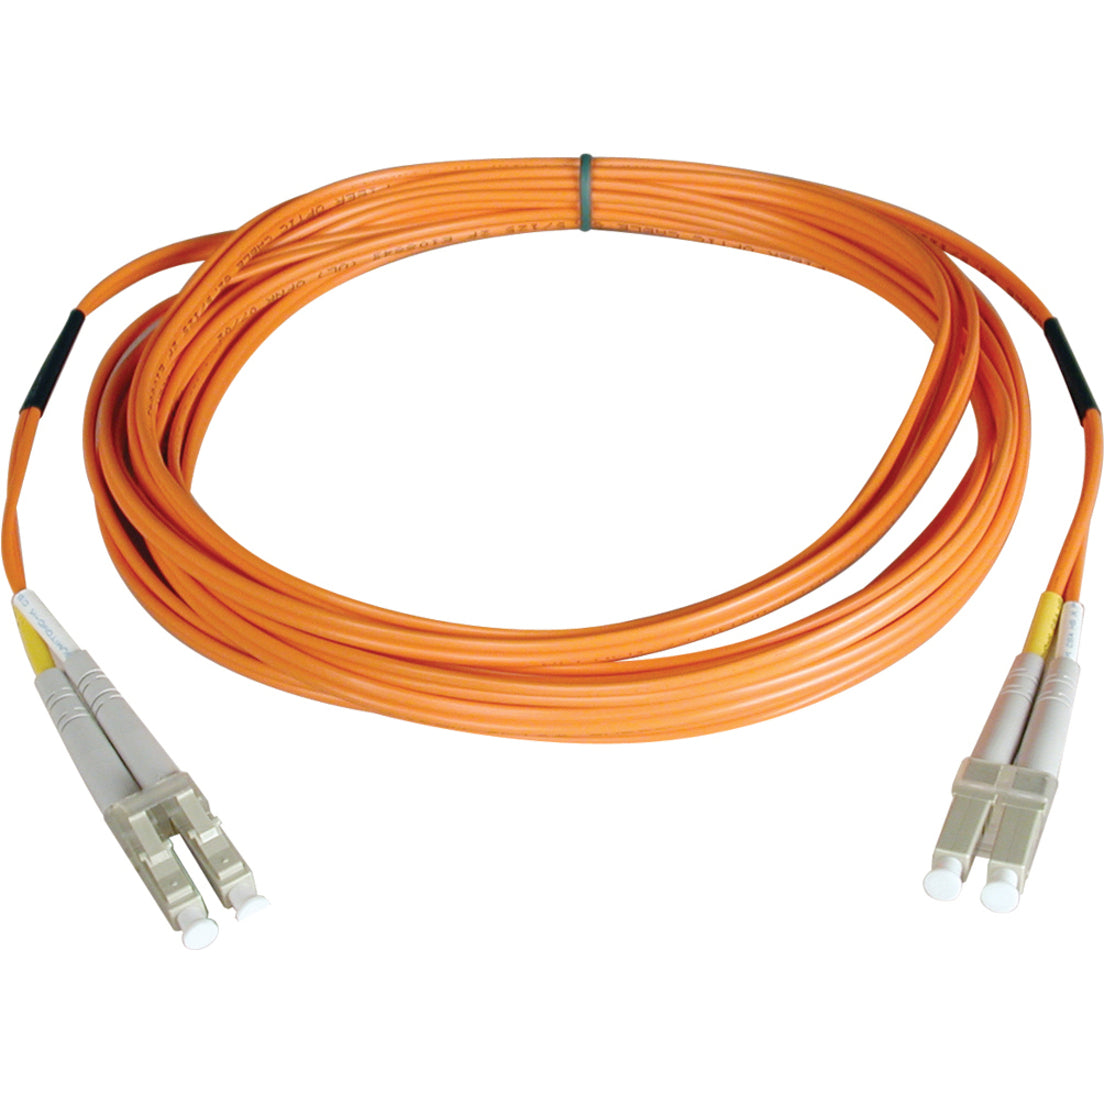 特色属性: Tripp Lite N520-152M优质光纤通道补丁电缆，500英尺，终身保修。品牌名称: Tripp Lite.品牌名称翻译: 特美电子。